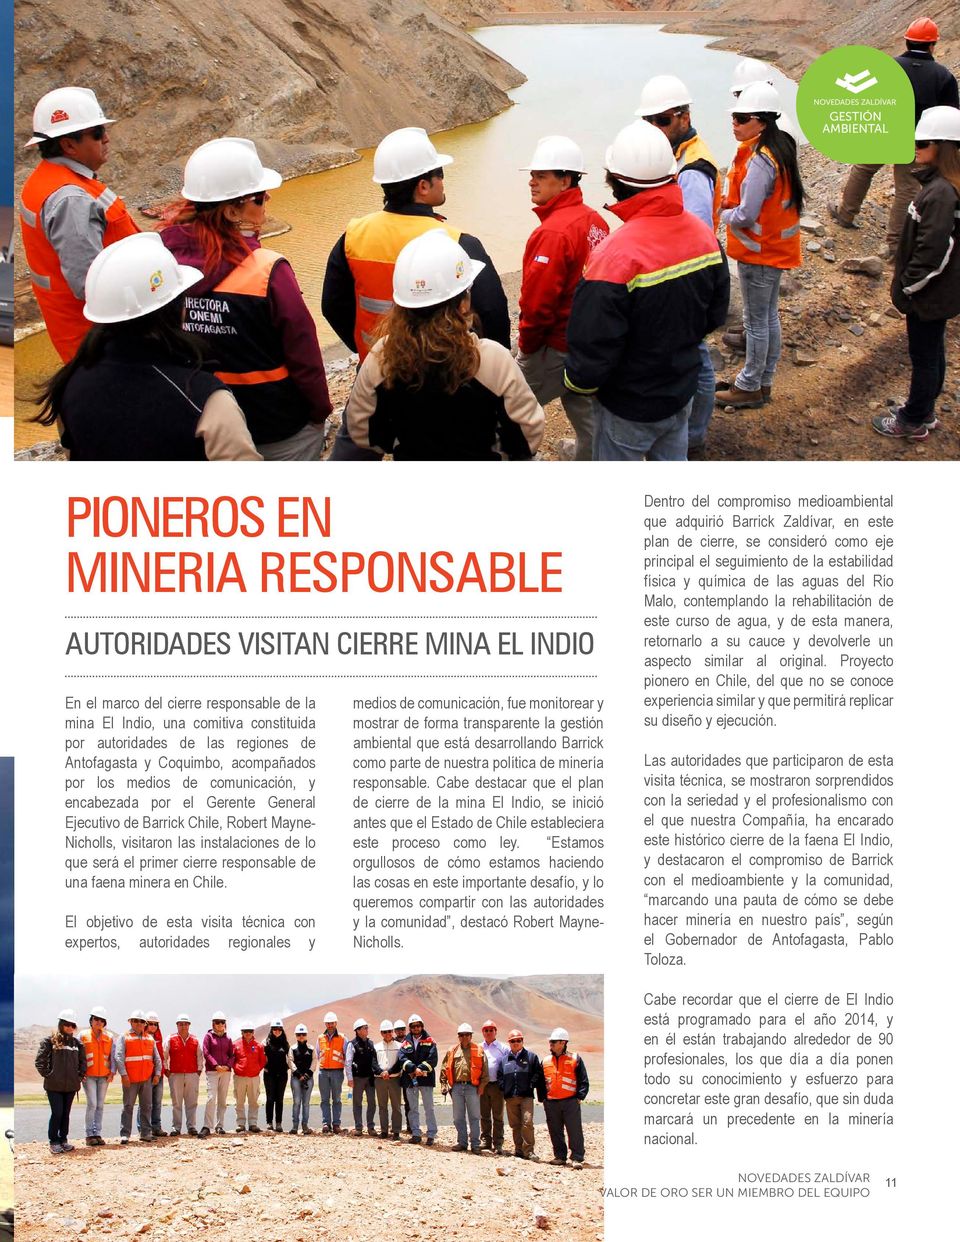 lo que será el primer cierre responsable de una faena minera en Chile.